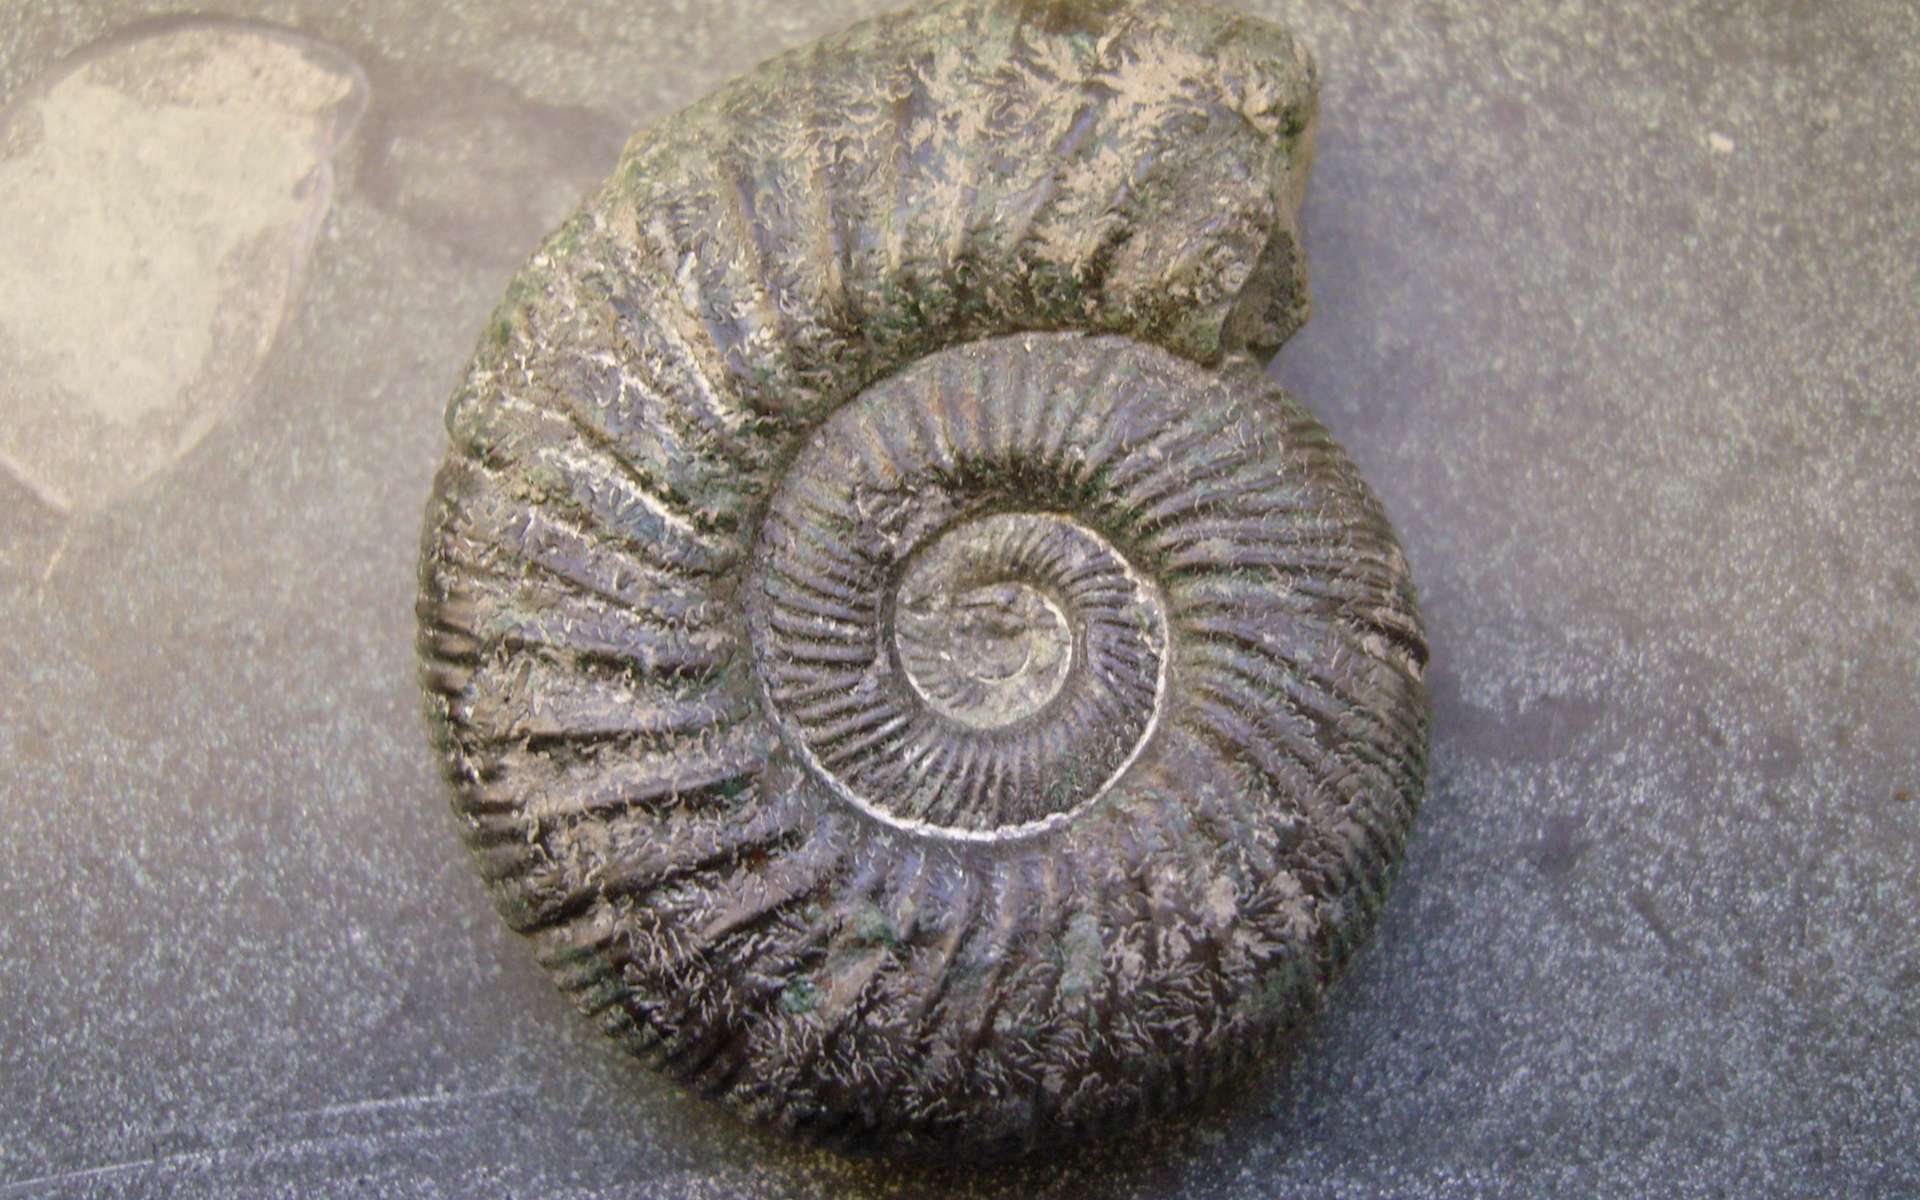 Les ammonites peuvent être utiles à la datation relative de strates géologiques. © GorissenM, Flickr, CC by-sa 2.0